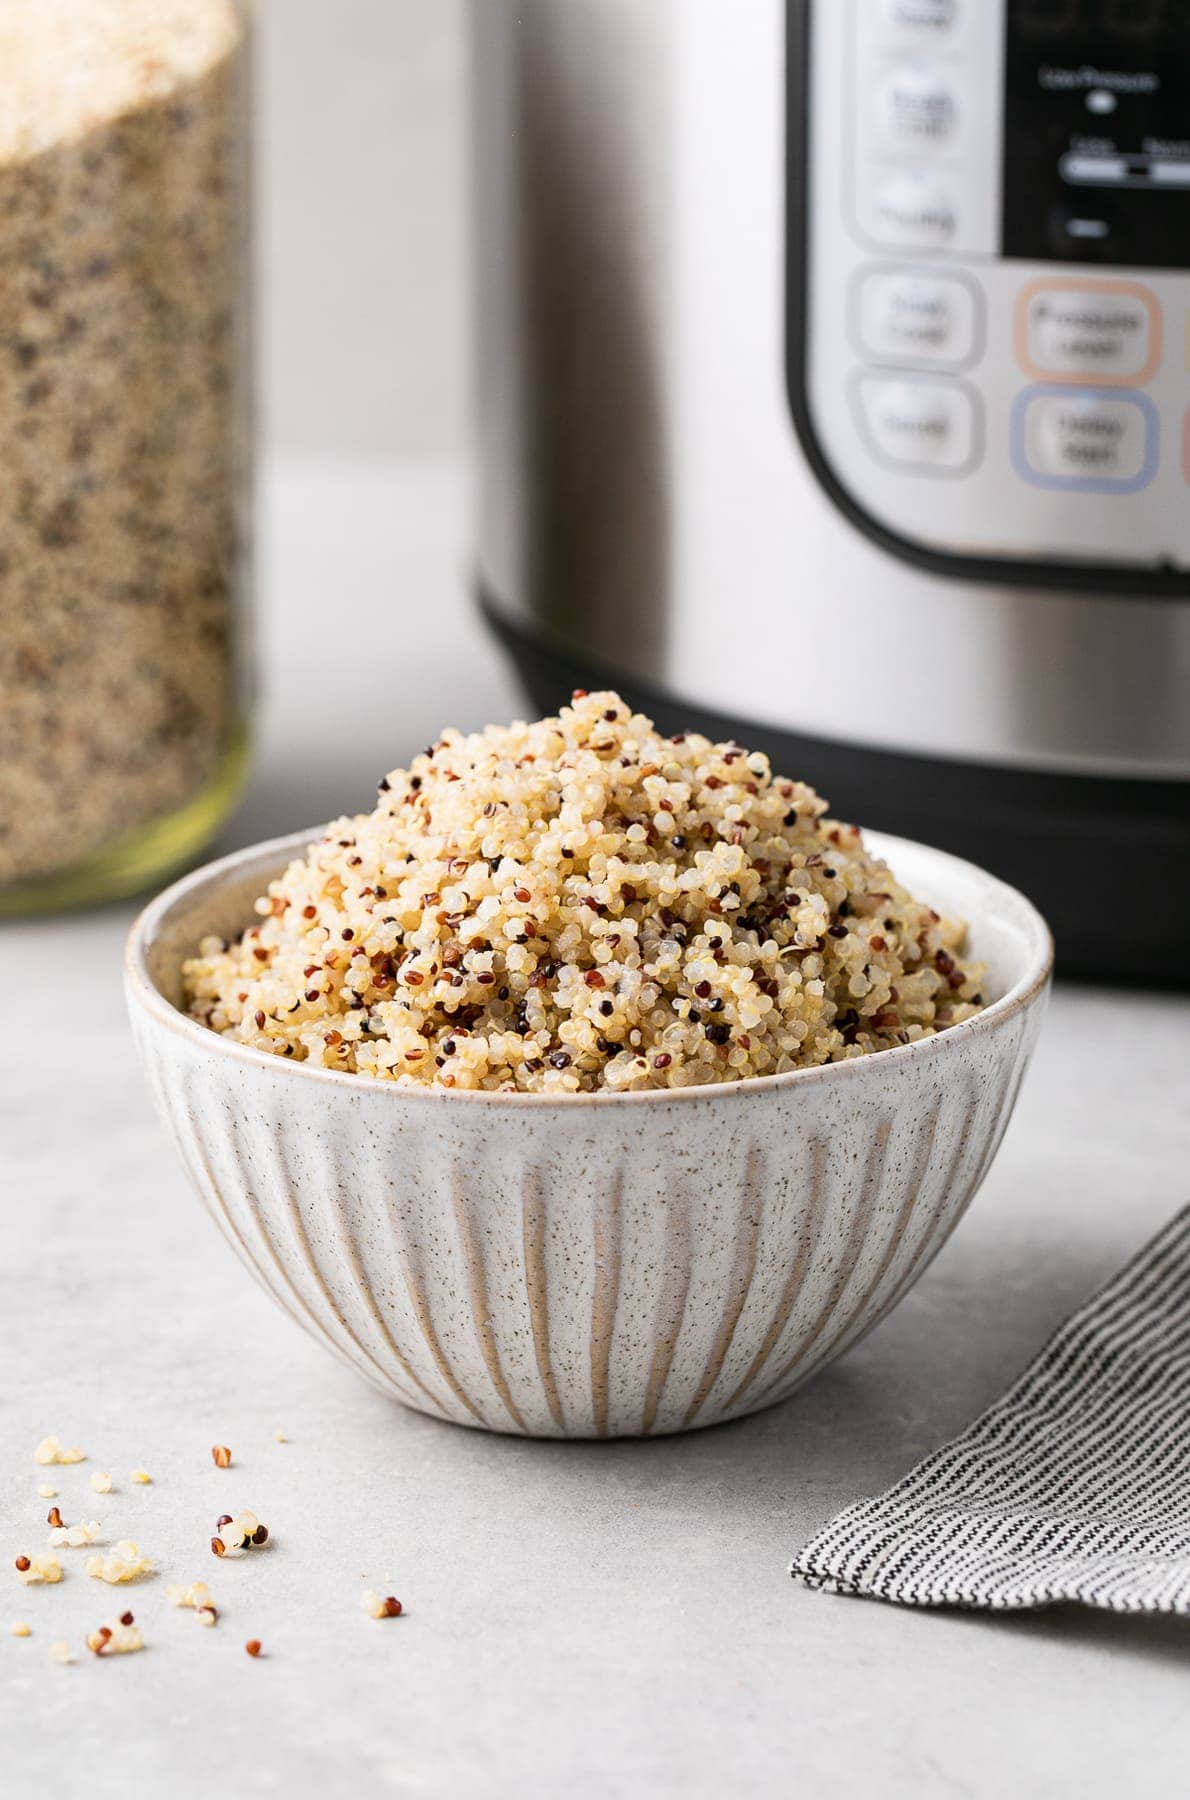 https://simple-veganista.com/wp-content/uploads/2020/02/instant-pot-quinoa-recipe-5.jpg